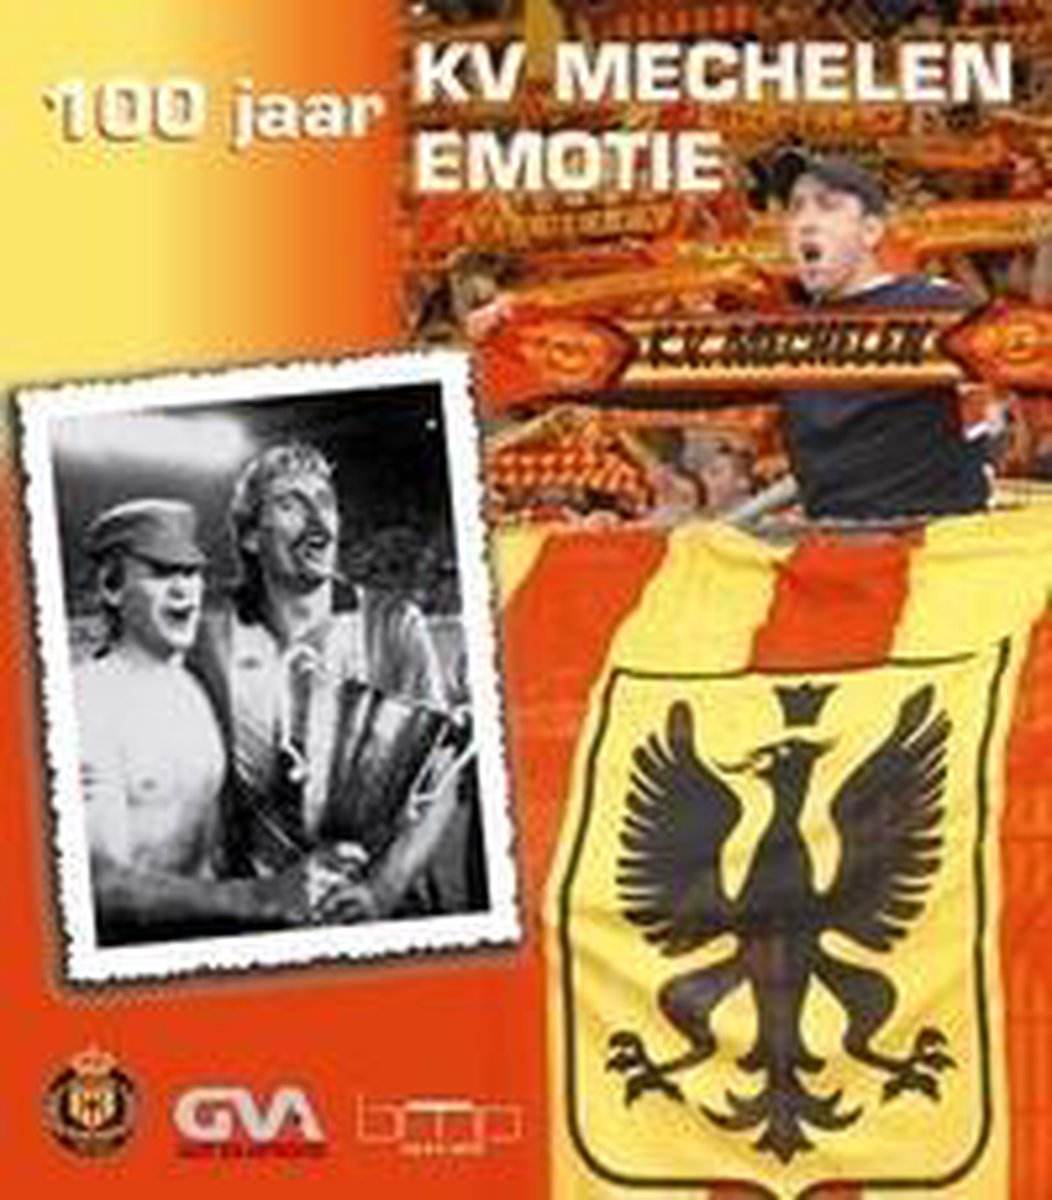 100 jaar kv Mechelen 100 jaar emotie